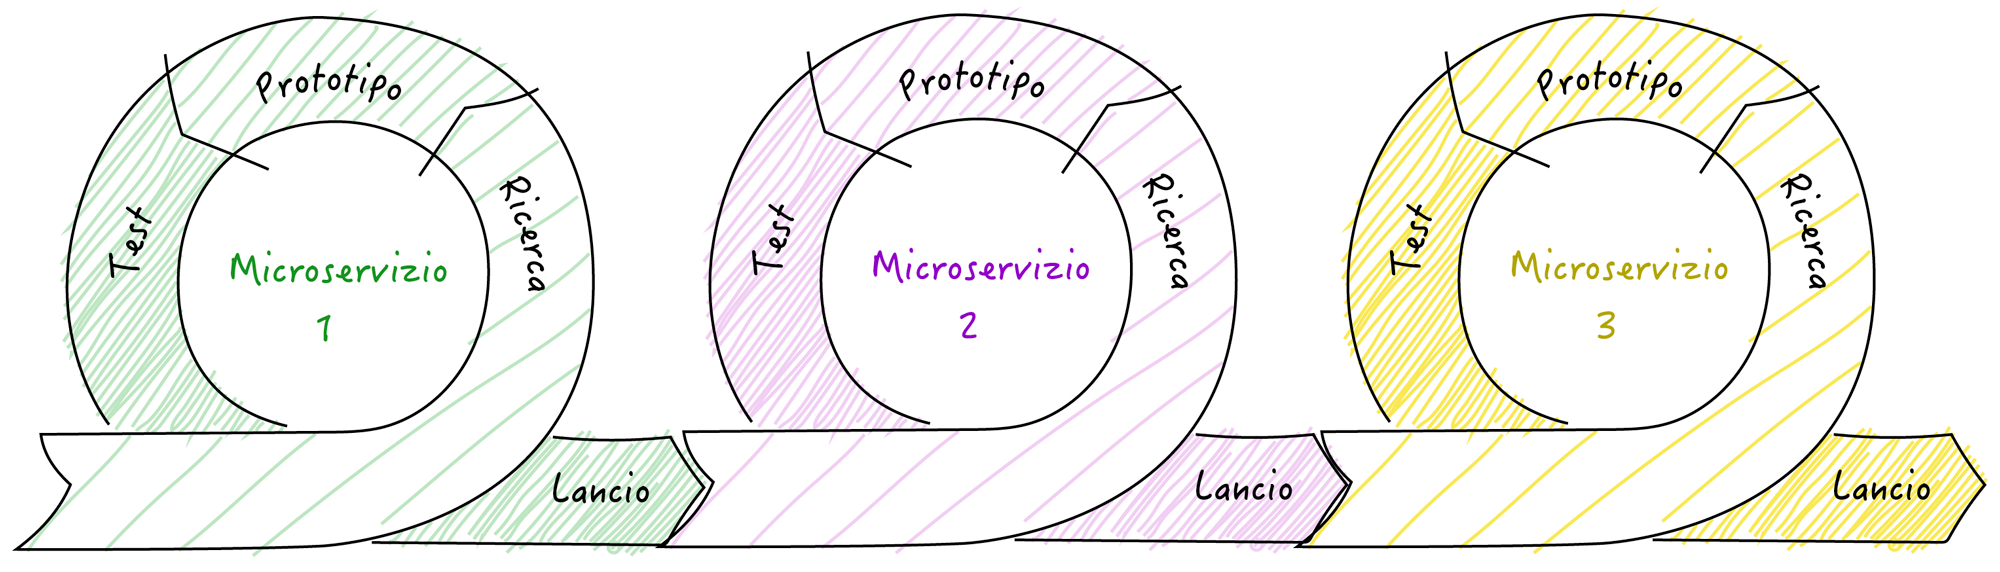 user experience e microservizi